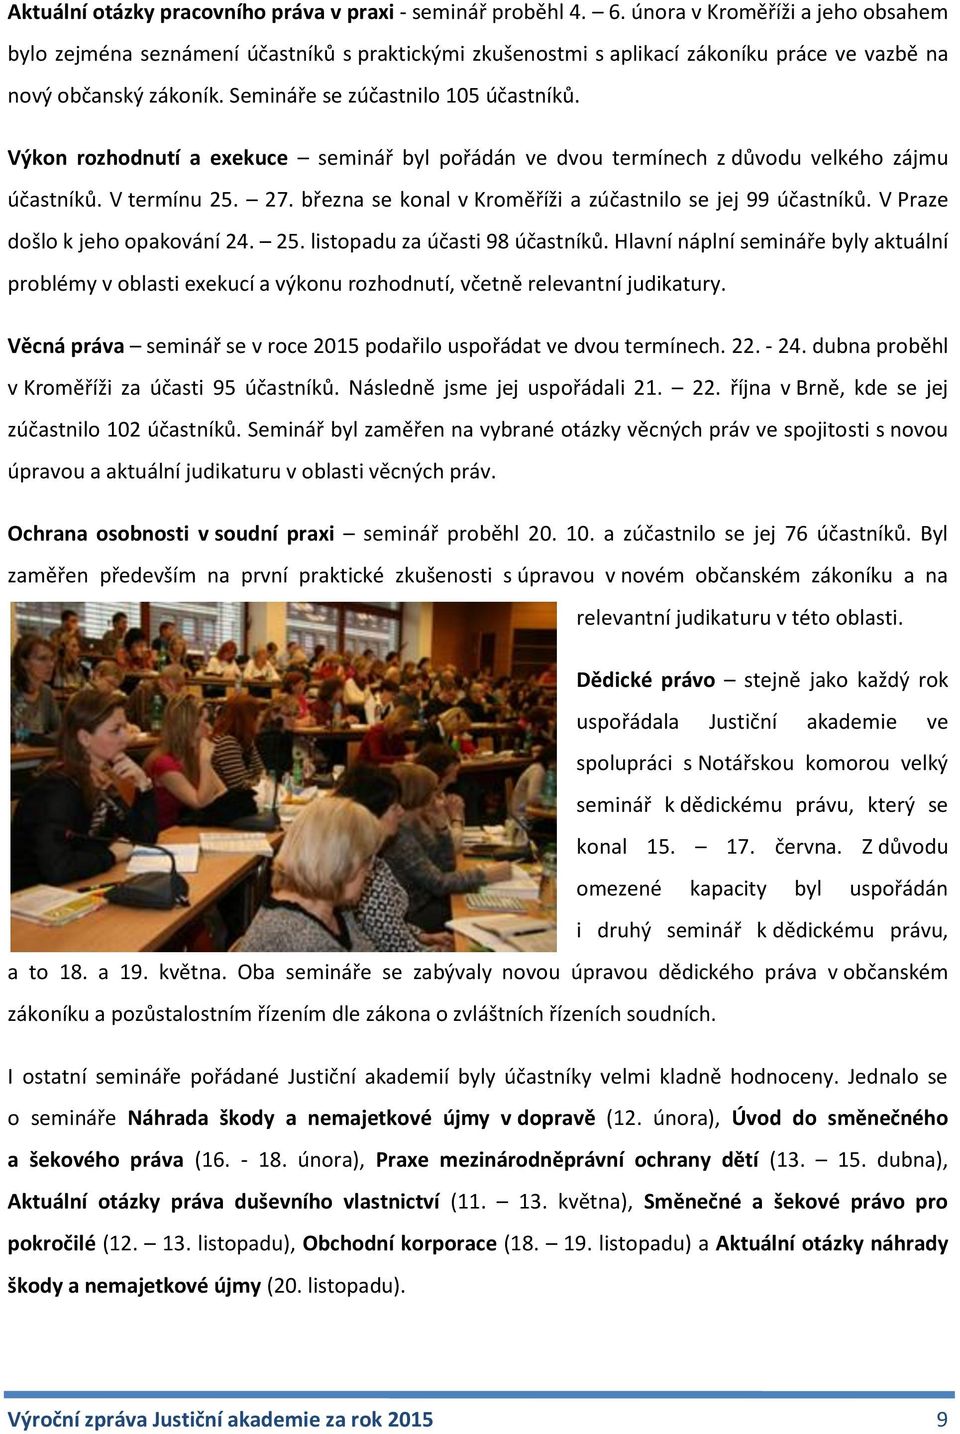 Výkon rozhodnutí a exekuce seminář byl pořádán ve dvou termínech z důvodu velkého zájmu účastníků. V termínu 25. 27. března se konal v Kroměříži a zúčastnilo se jej 99 účastníků.